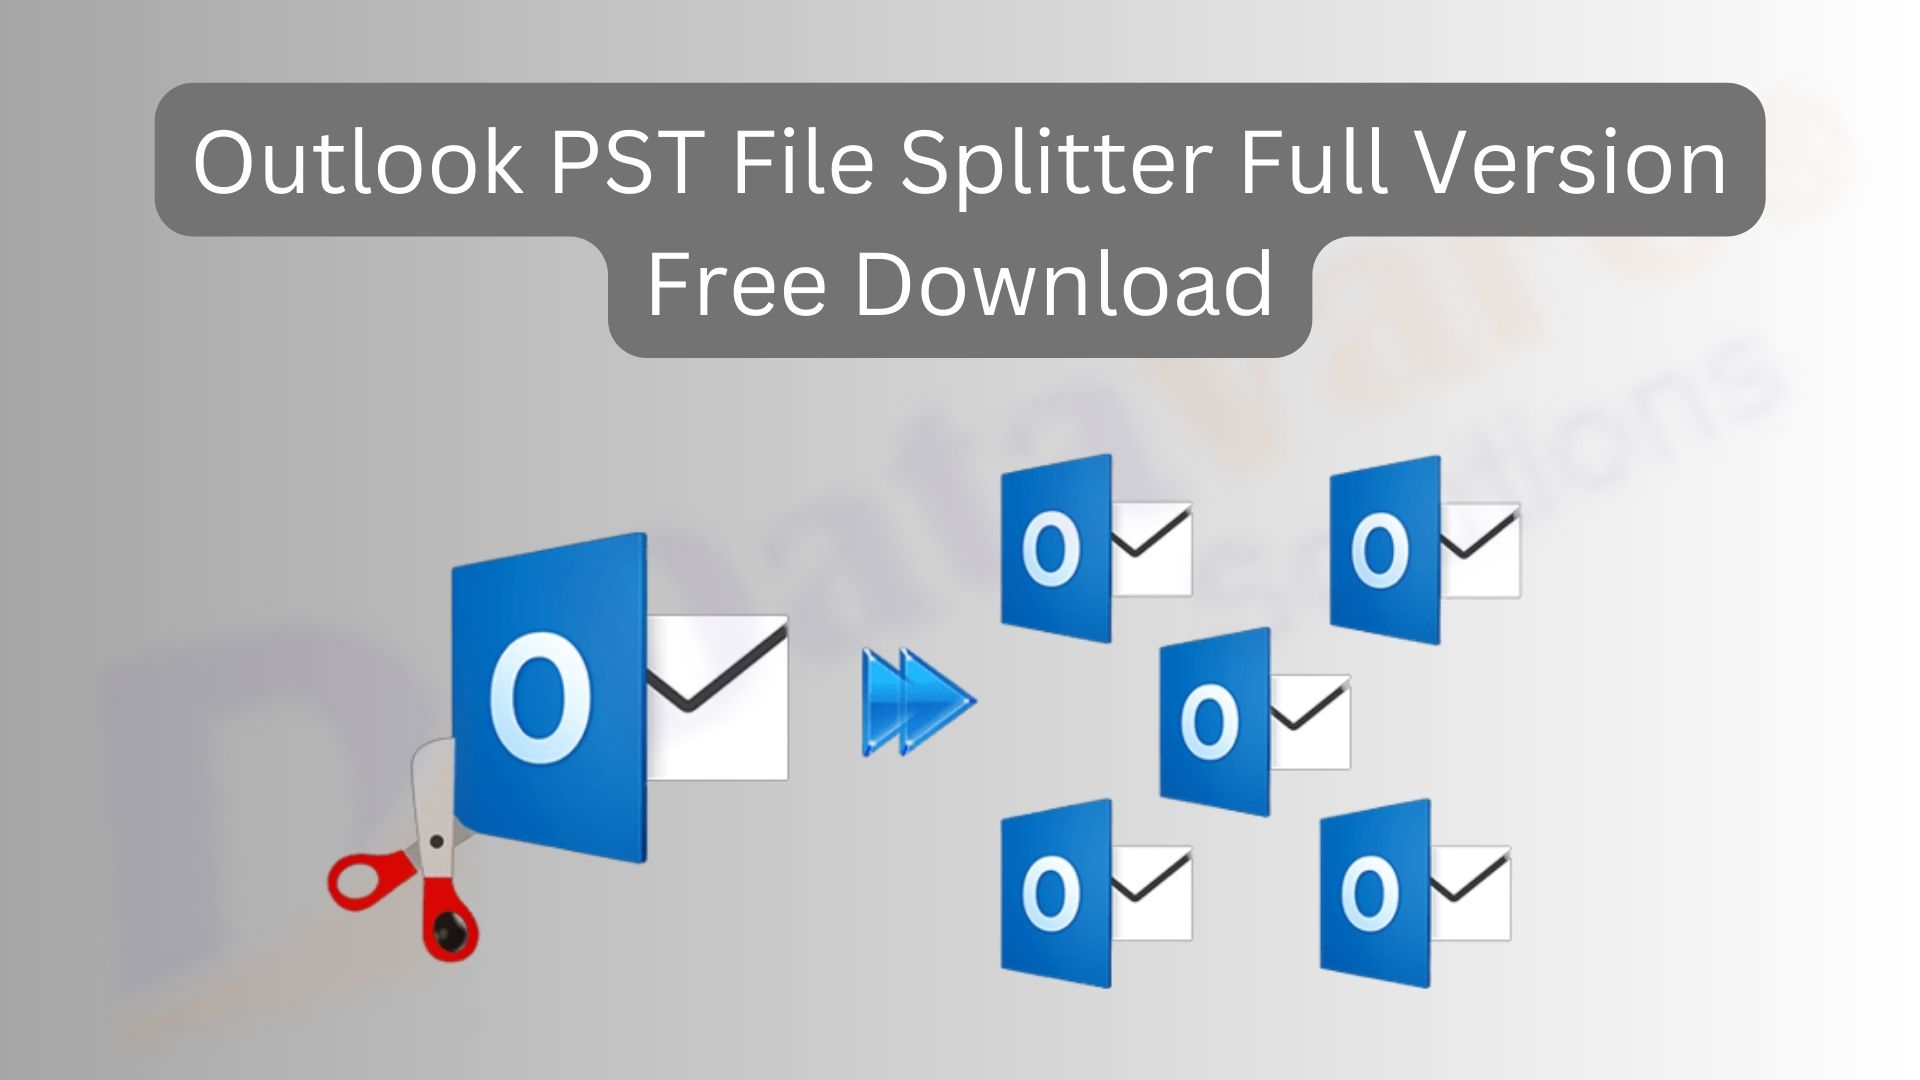 Outlook PST File Splitter Full Version Free Download